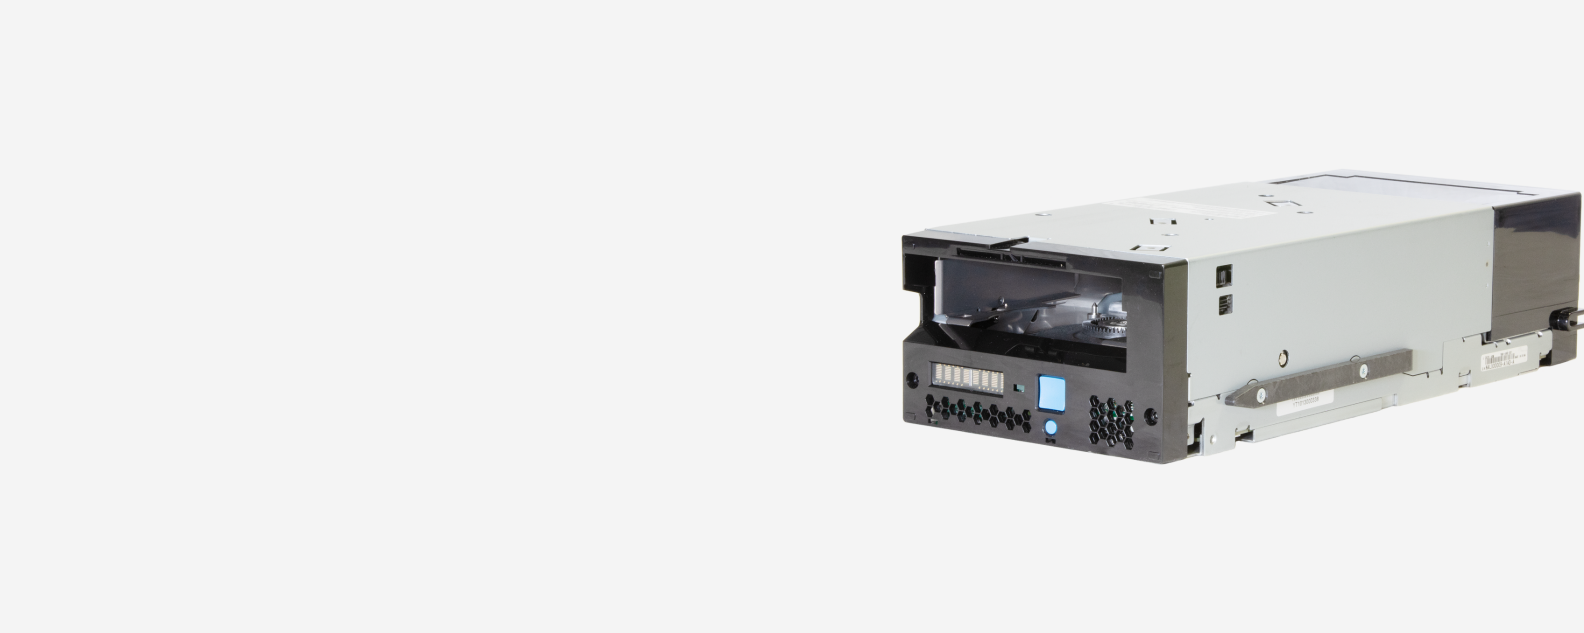 IBM TS1170 Tape Drive 제품 스크린샷 